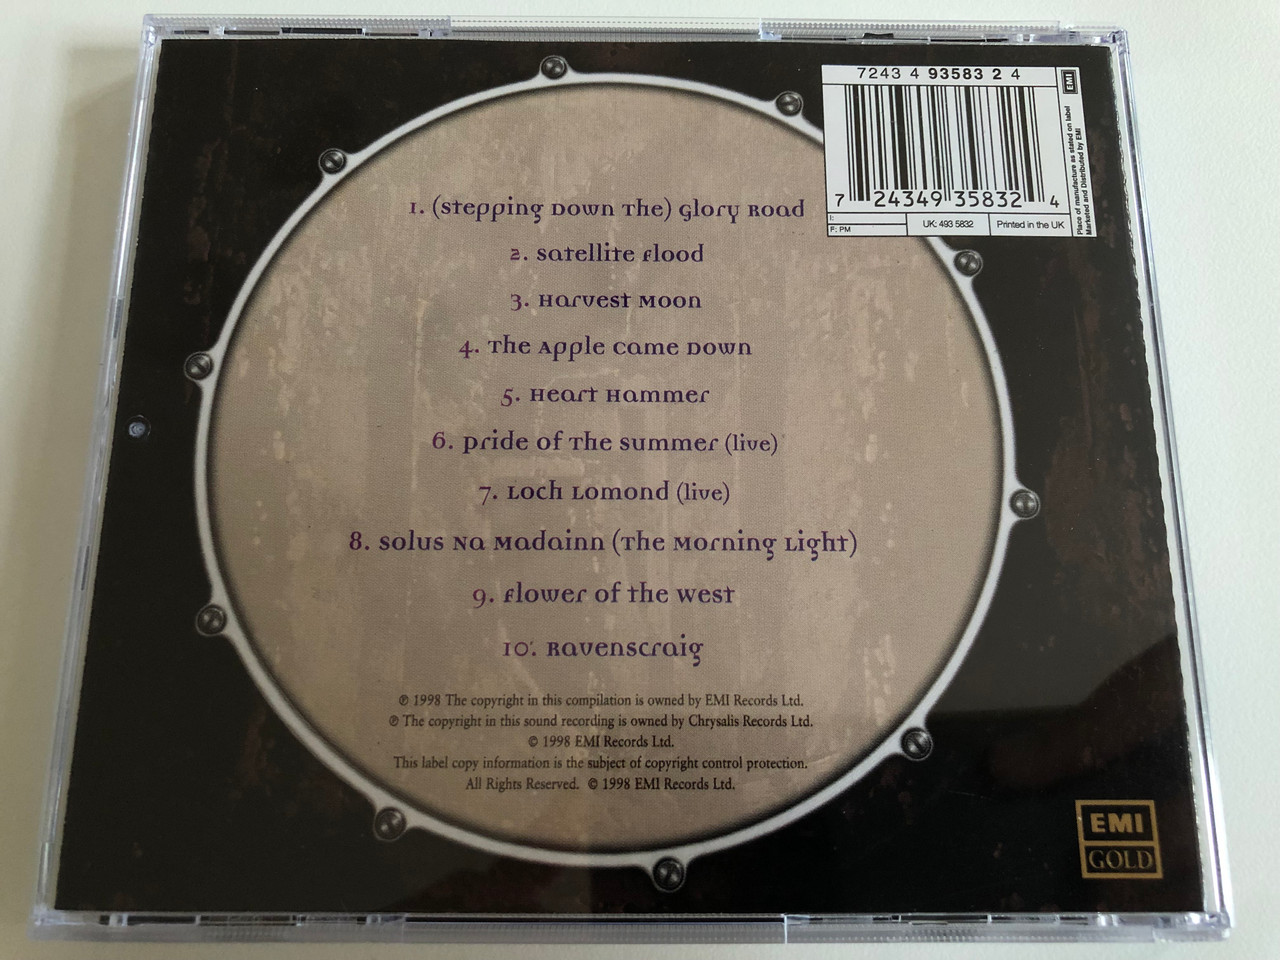 Beat The Drum - Runrig / EMI Gold Audio CD 1998 / 724349358324 ...